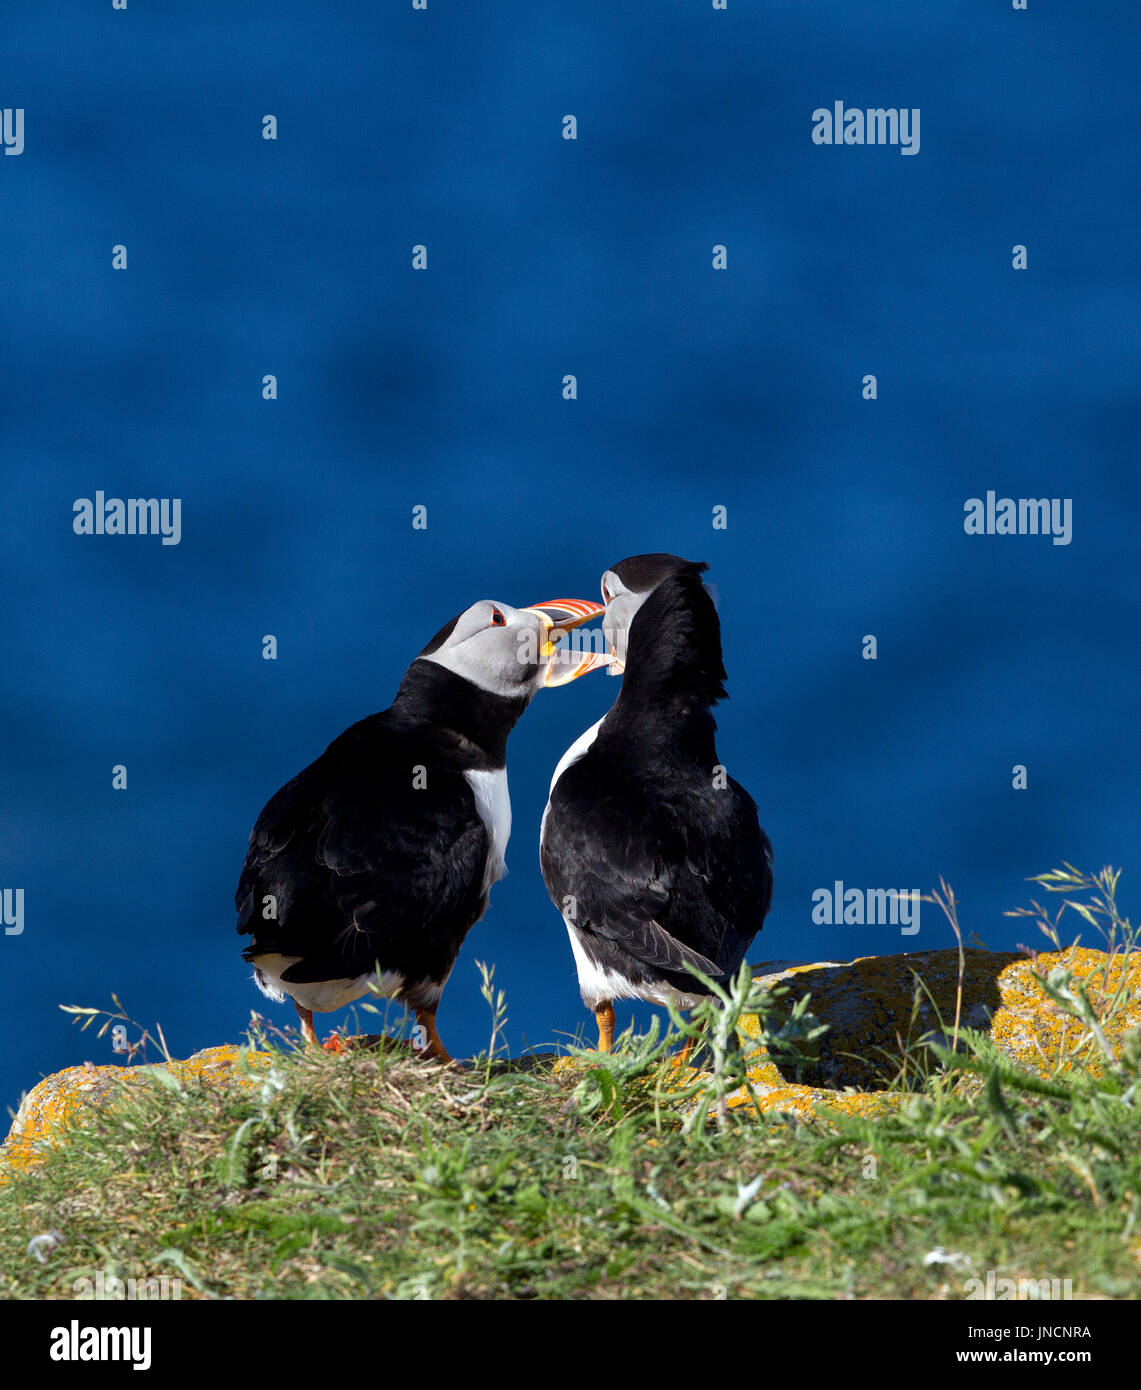 Atlantic i puffini interagire Foto Stock